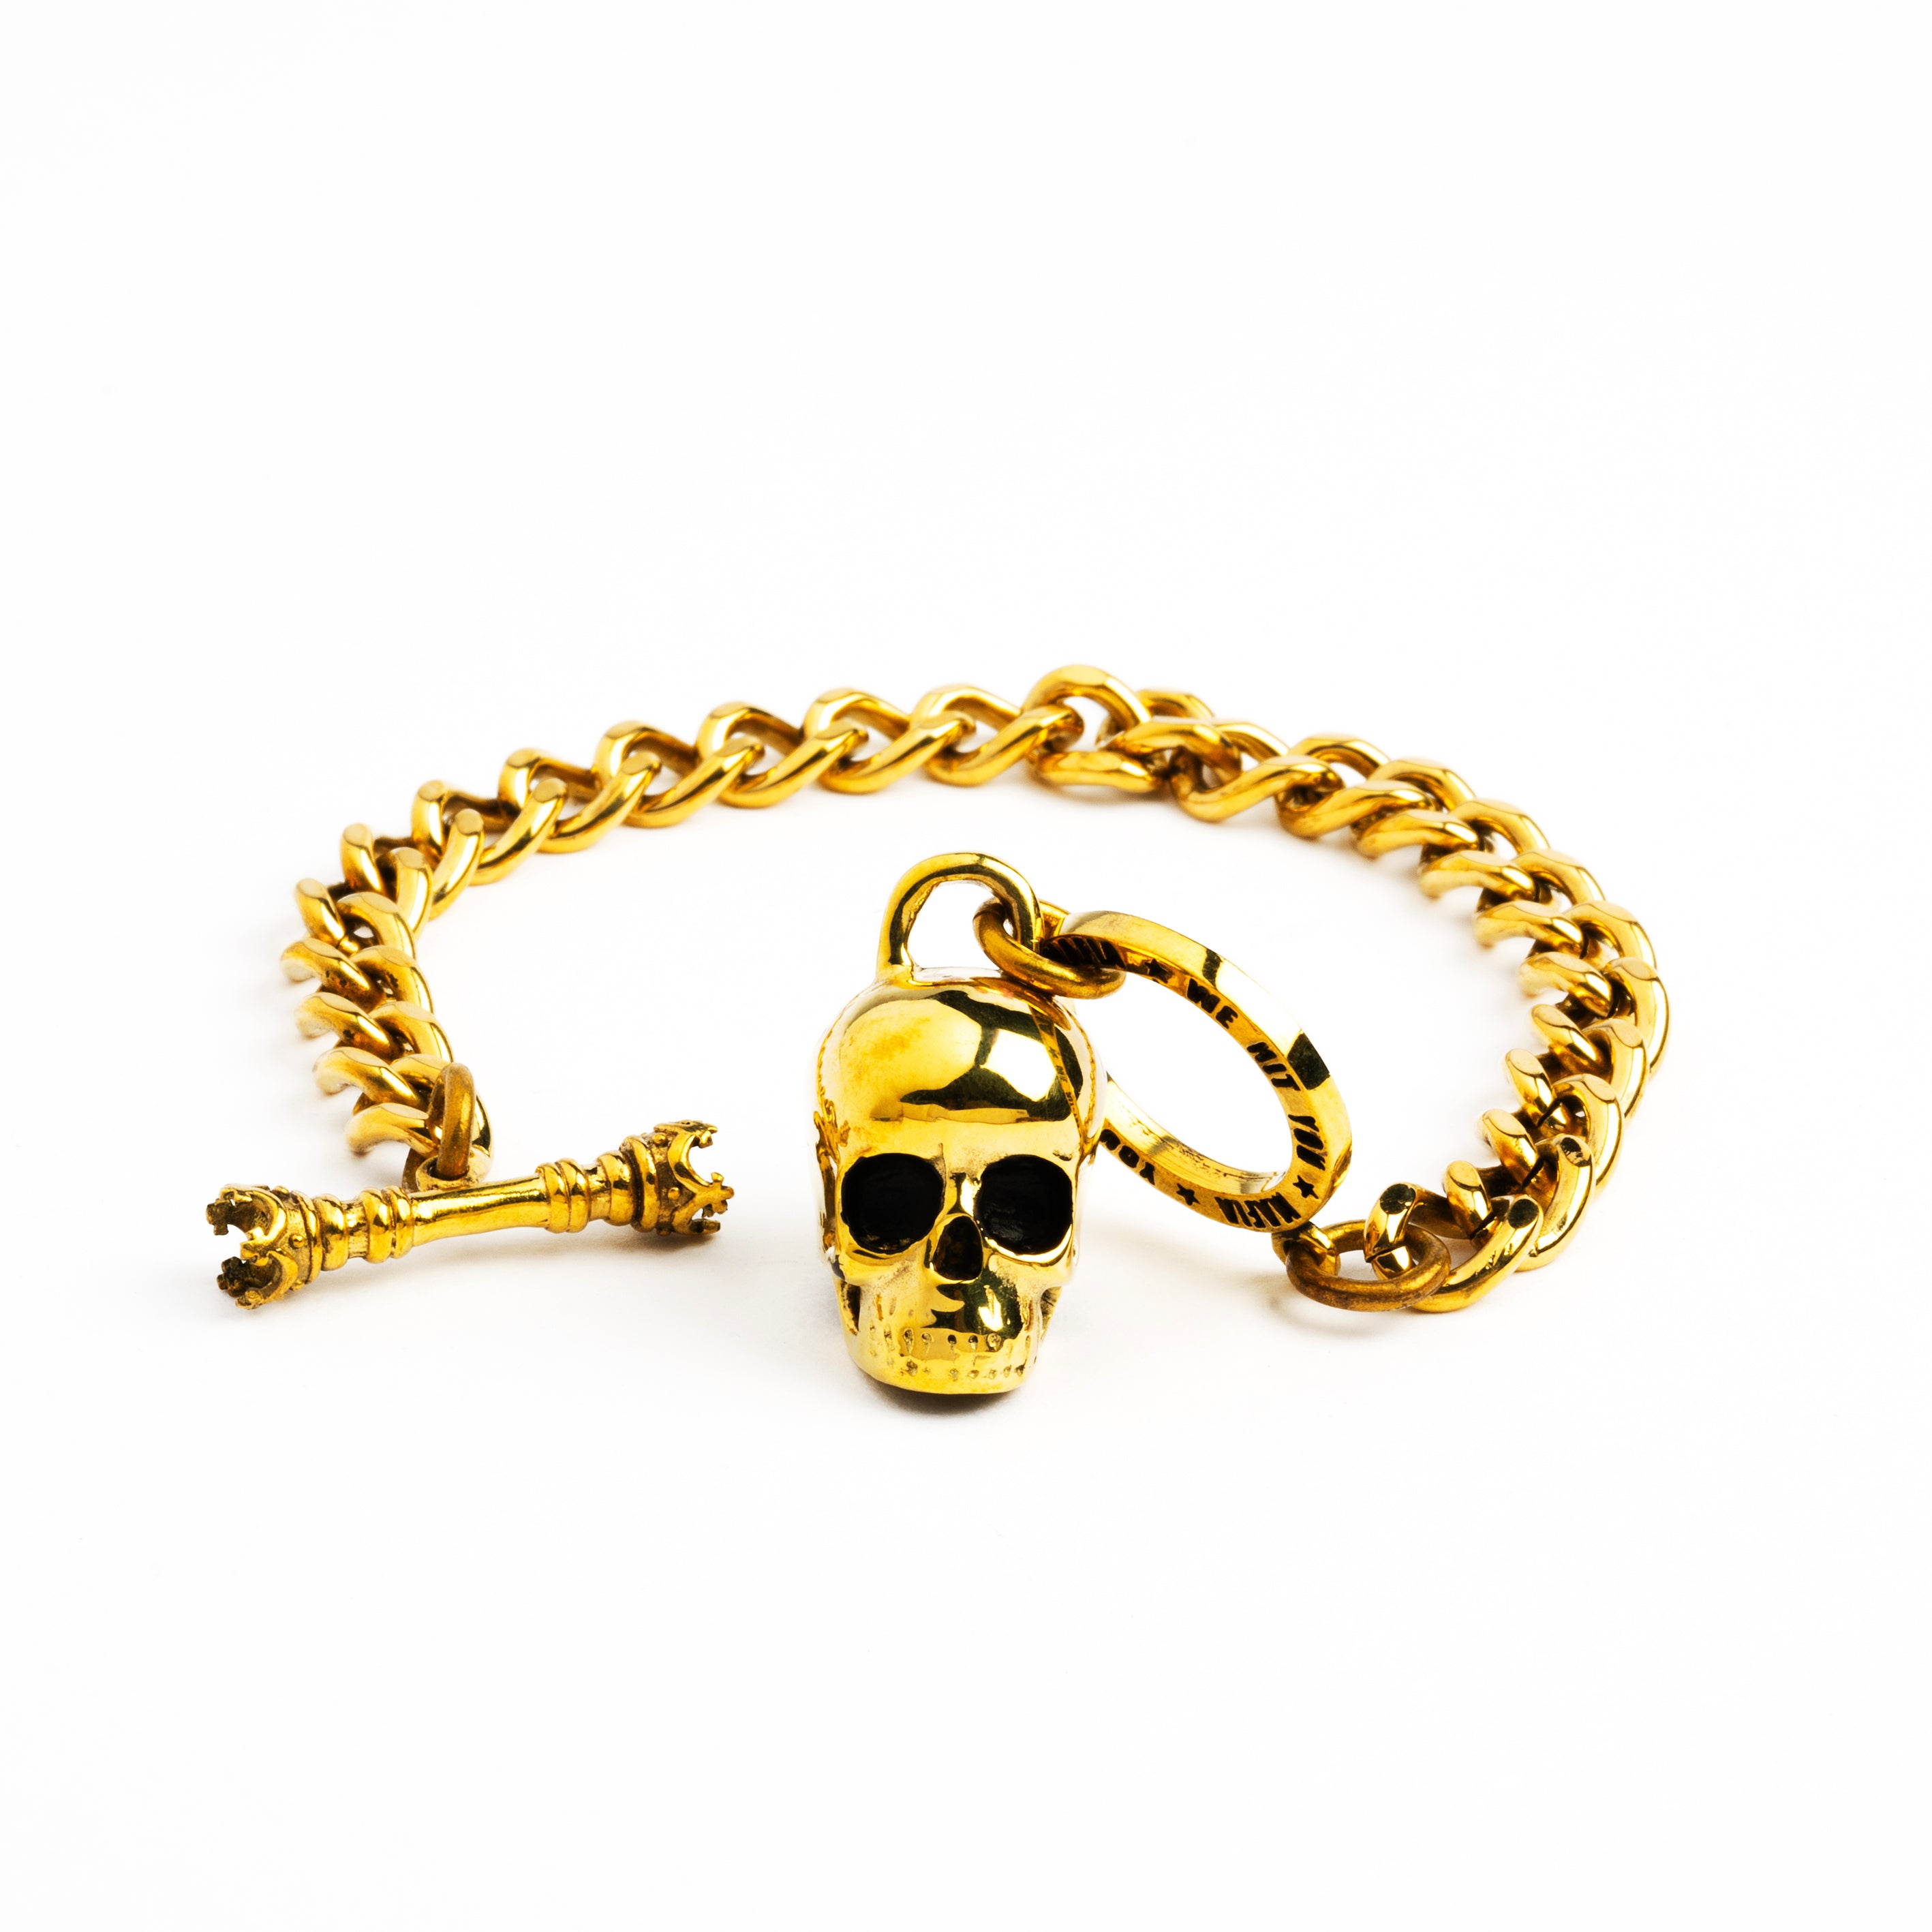 Skull-chunky-chain-baracelet_4